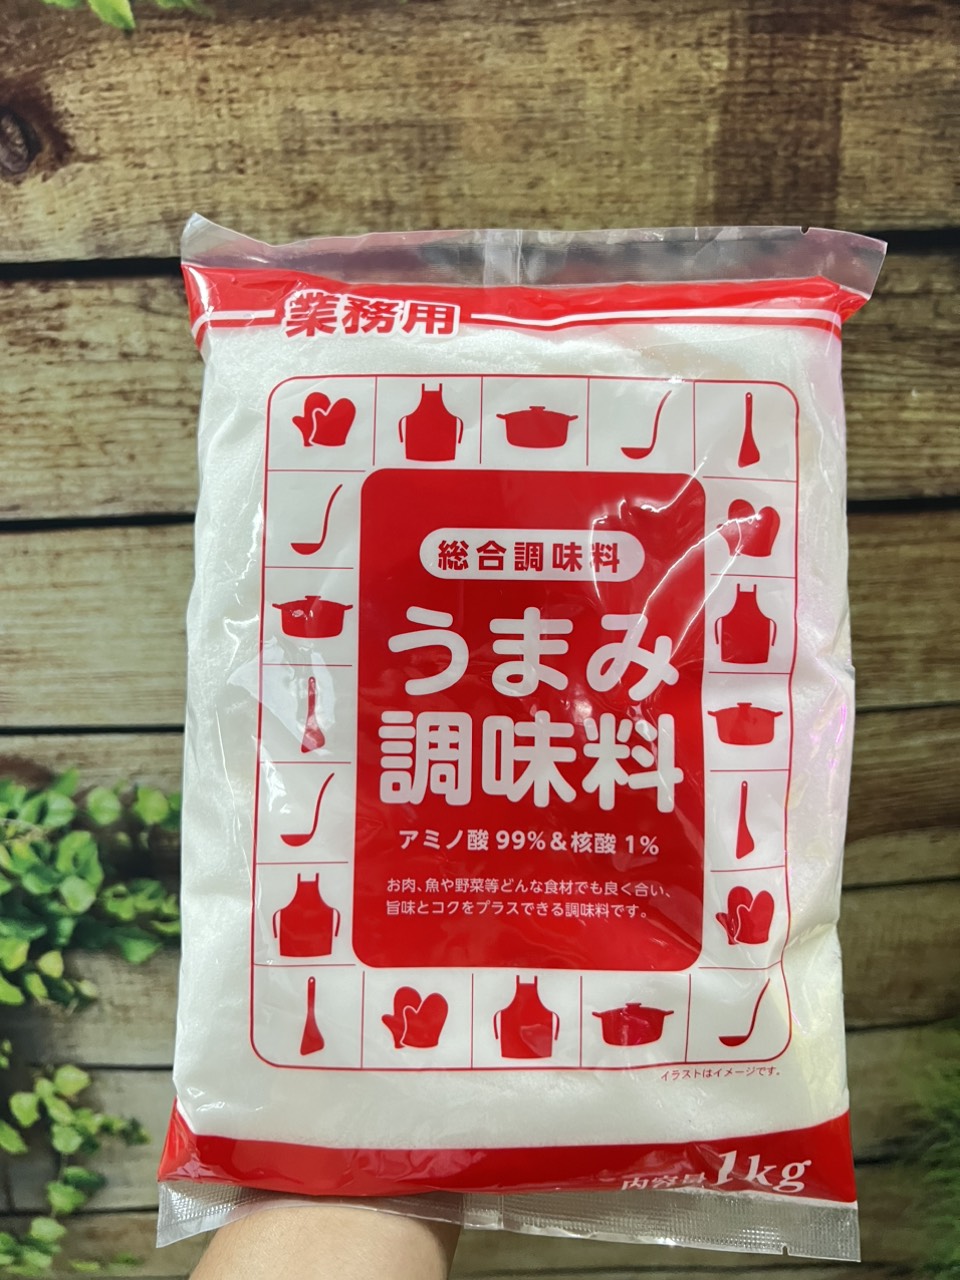 Mì Chính Bột Ngọt Kobe Umami 1KG | Nội Địa Nhật Bản